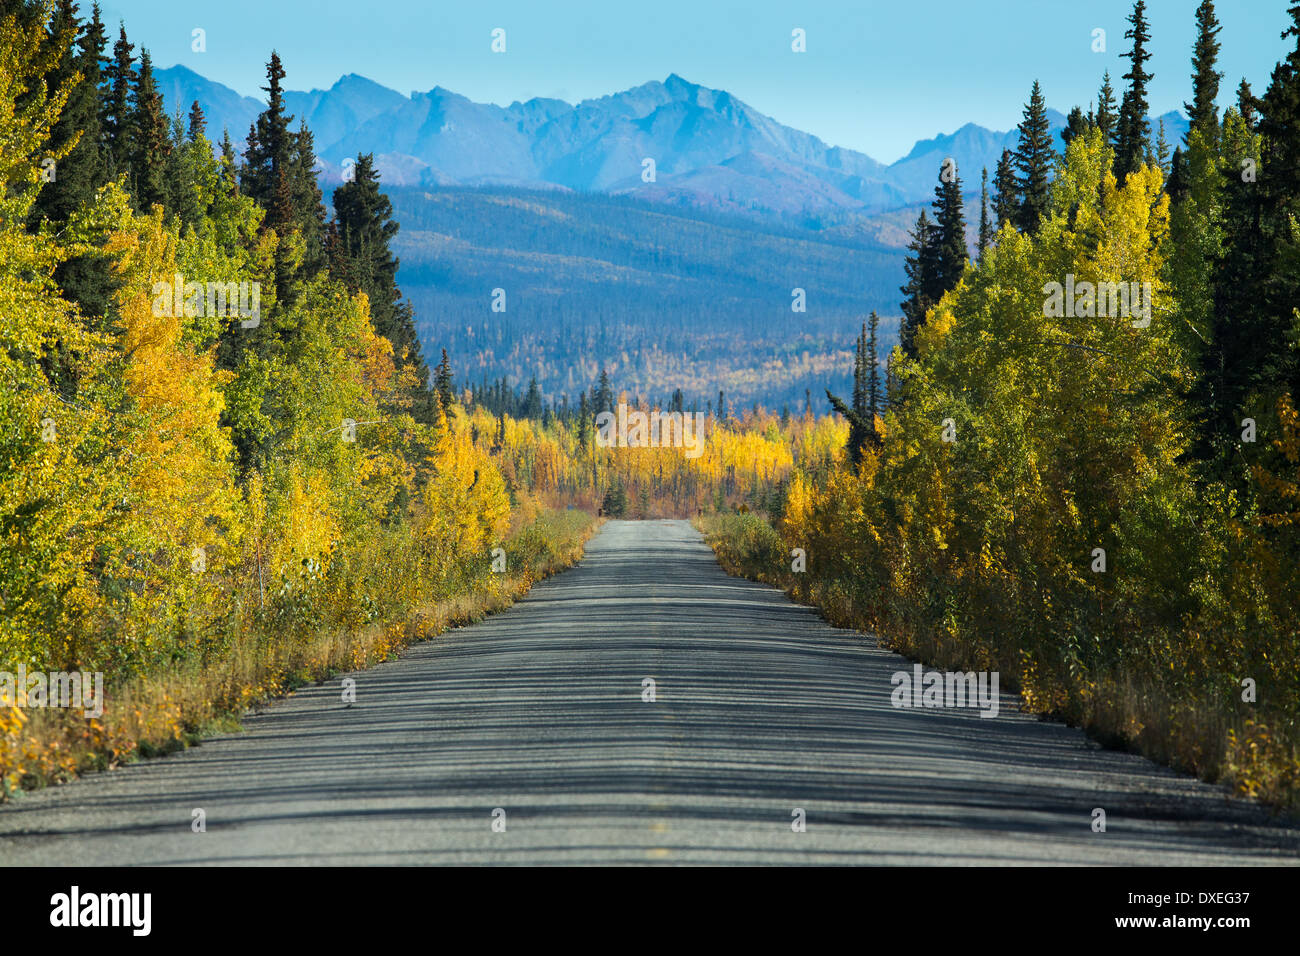 La route Dempster, au Yukon, Canada Banque D'Images